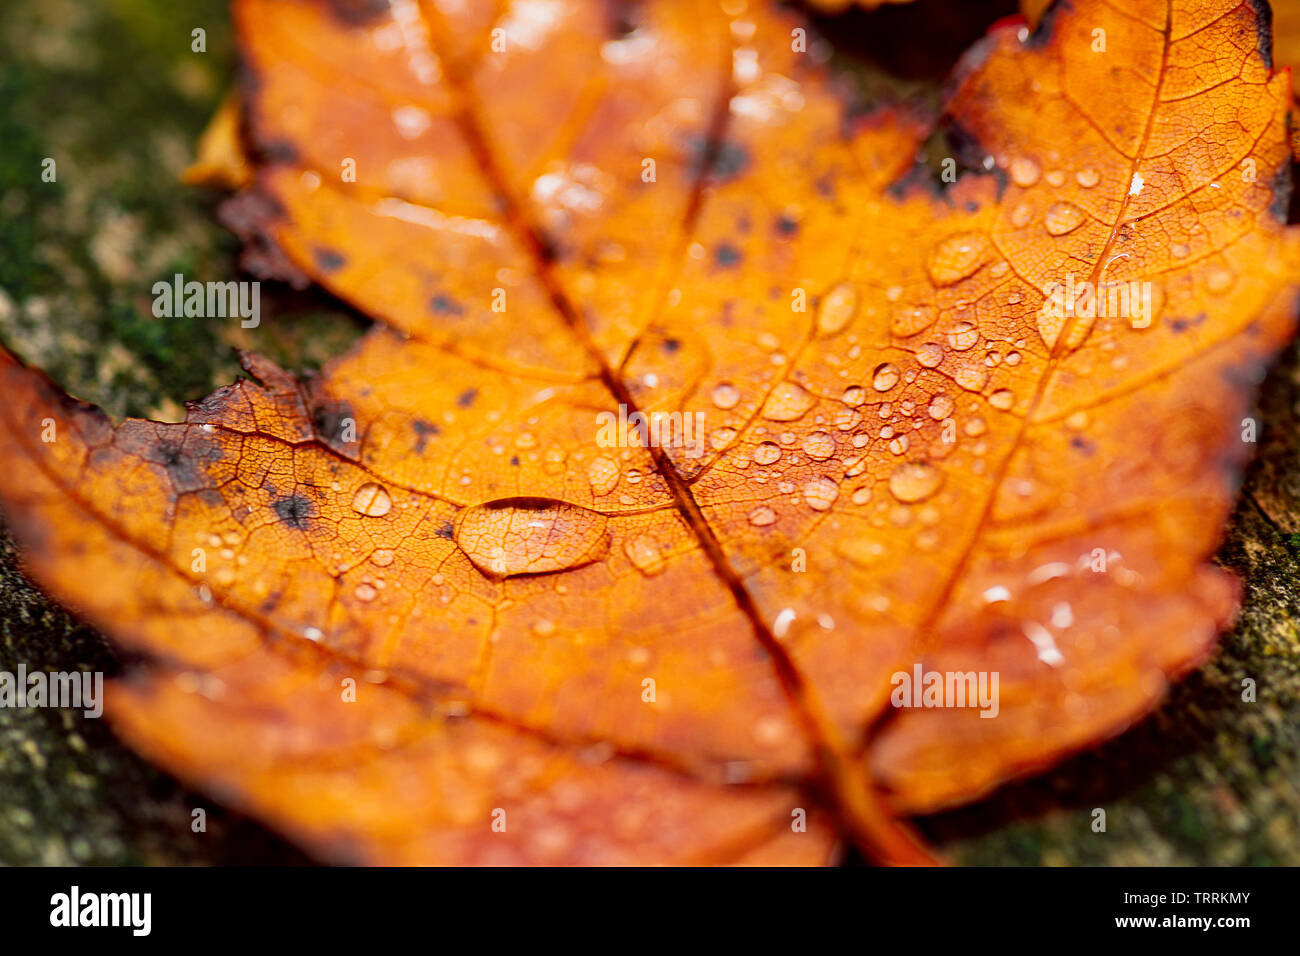 Makro Foto einer orange Sugar maple leaf im Herbst/Herbst in Regen fällt. Stockfoto